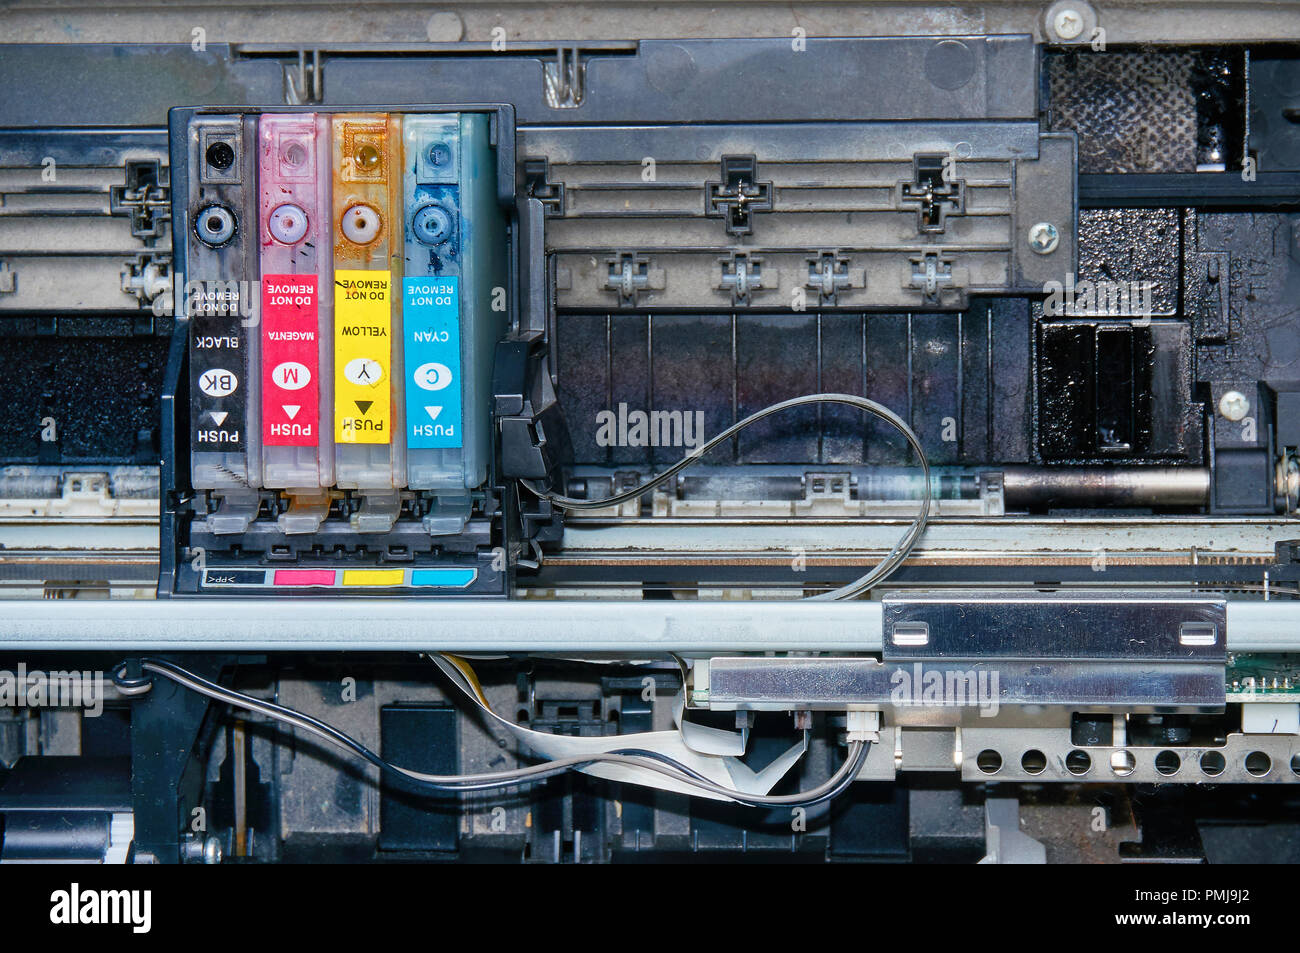 Printer repair stock and images - Alamy